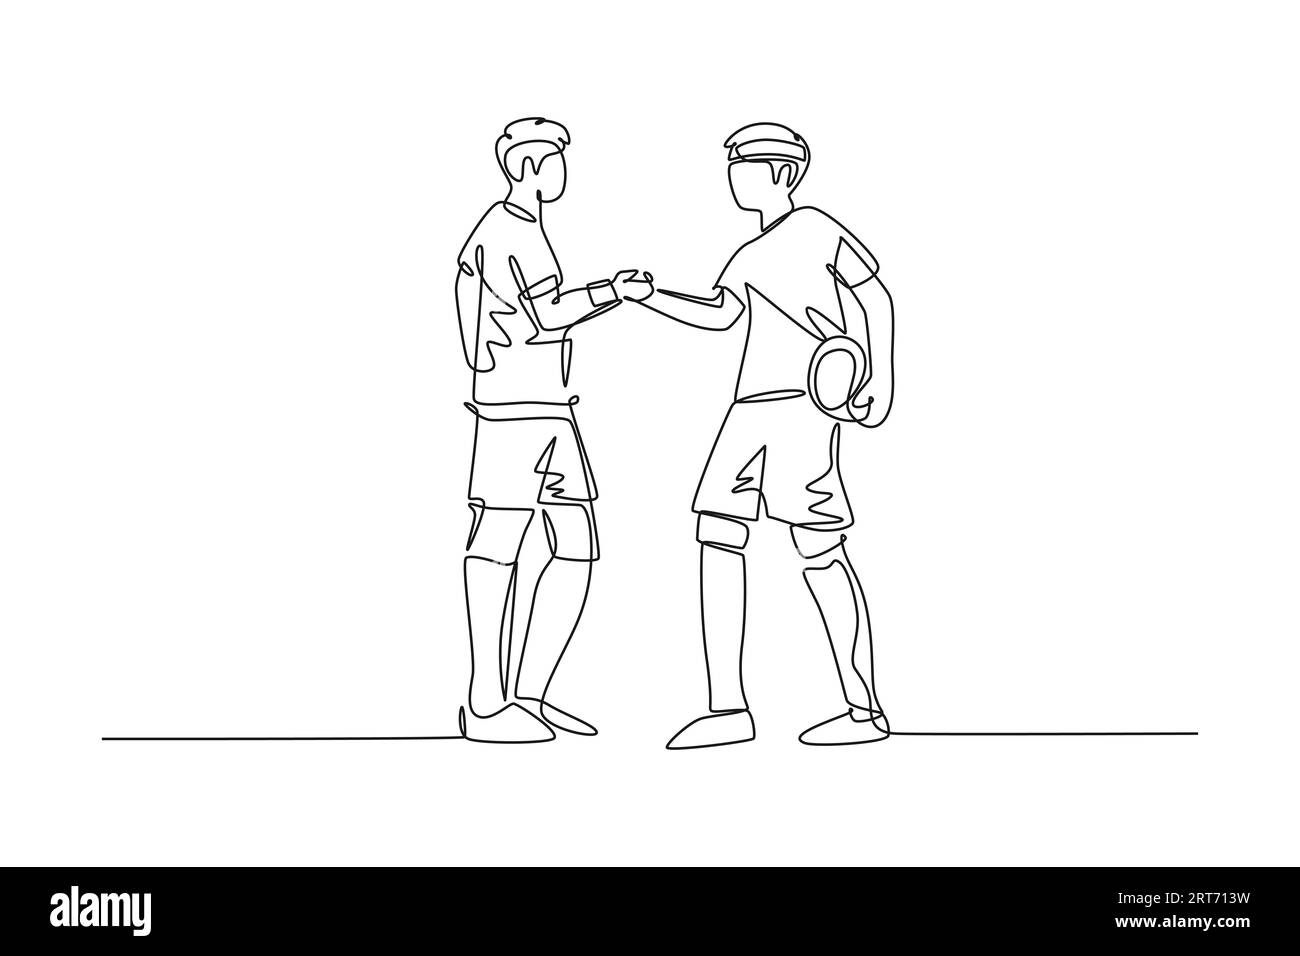 Une seule ligne dessinant deux joueurs de football apportent la balle et la poignée de main pour montrer l'esprit sportif avant de commencer le match. Respect dans le sport de football. Conti Banque D'Images